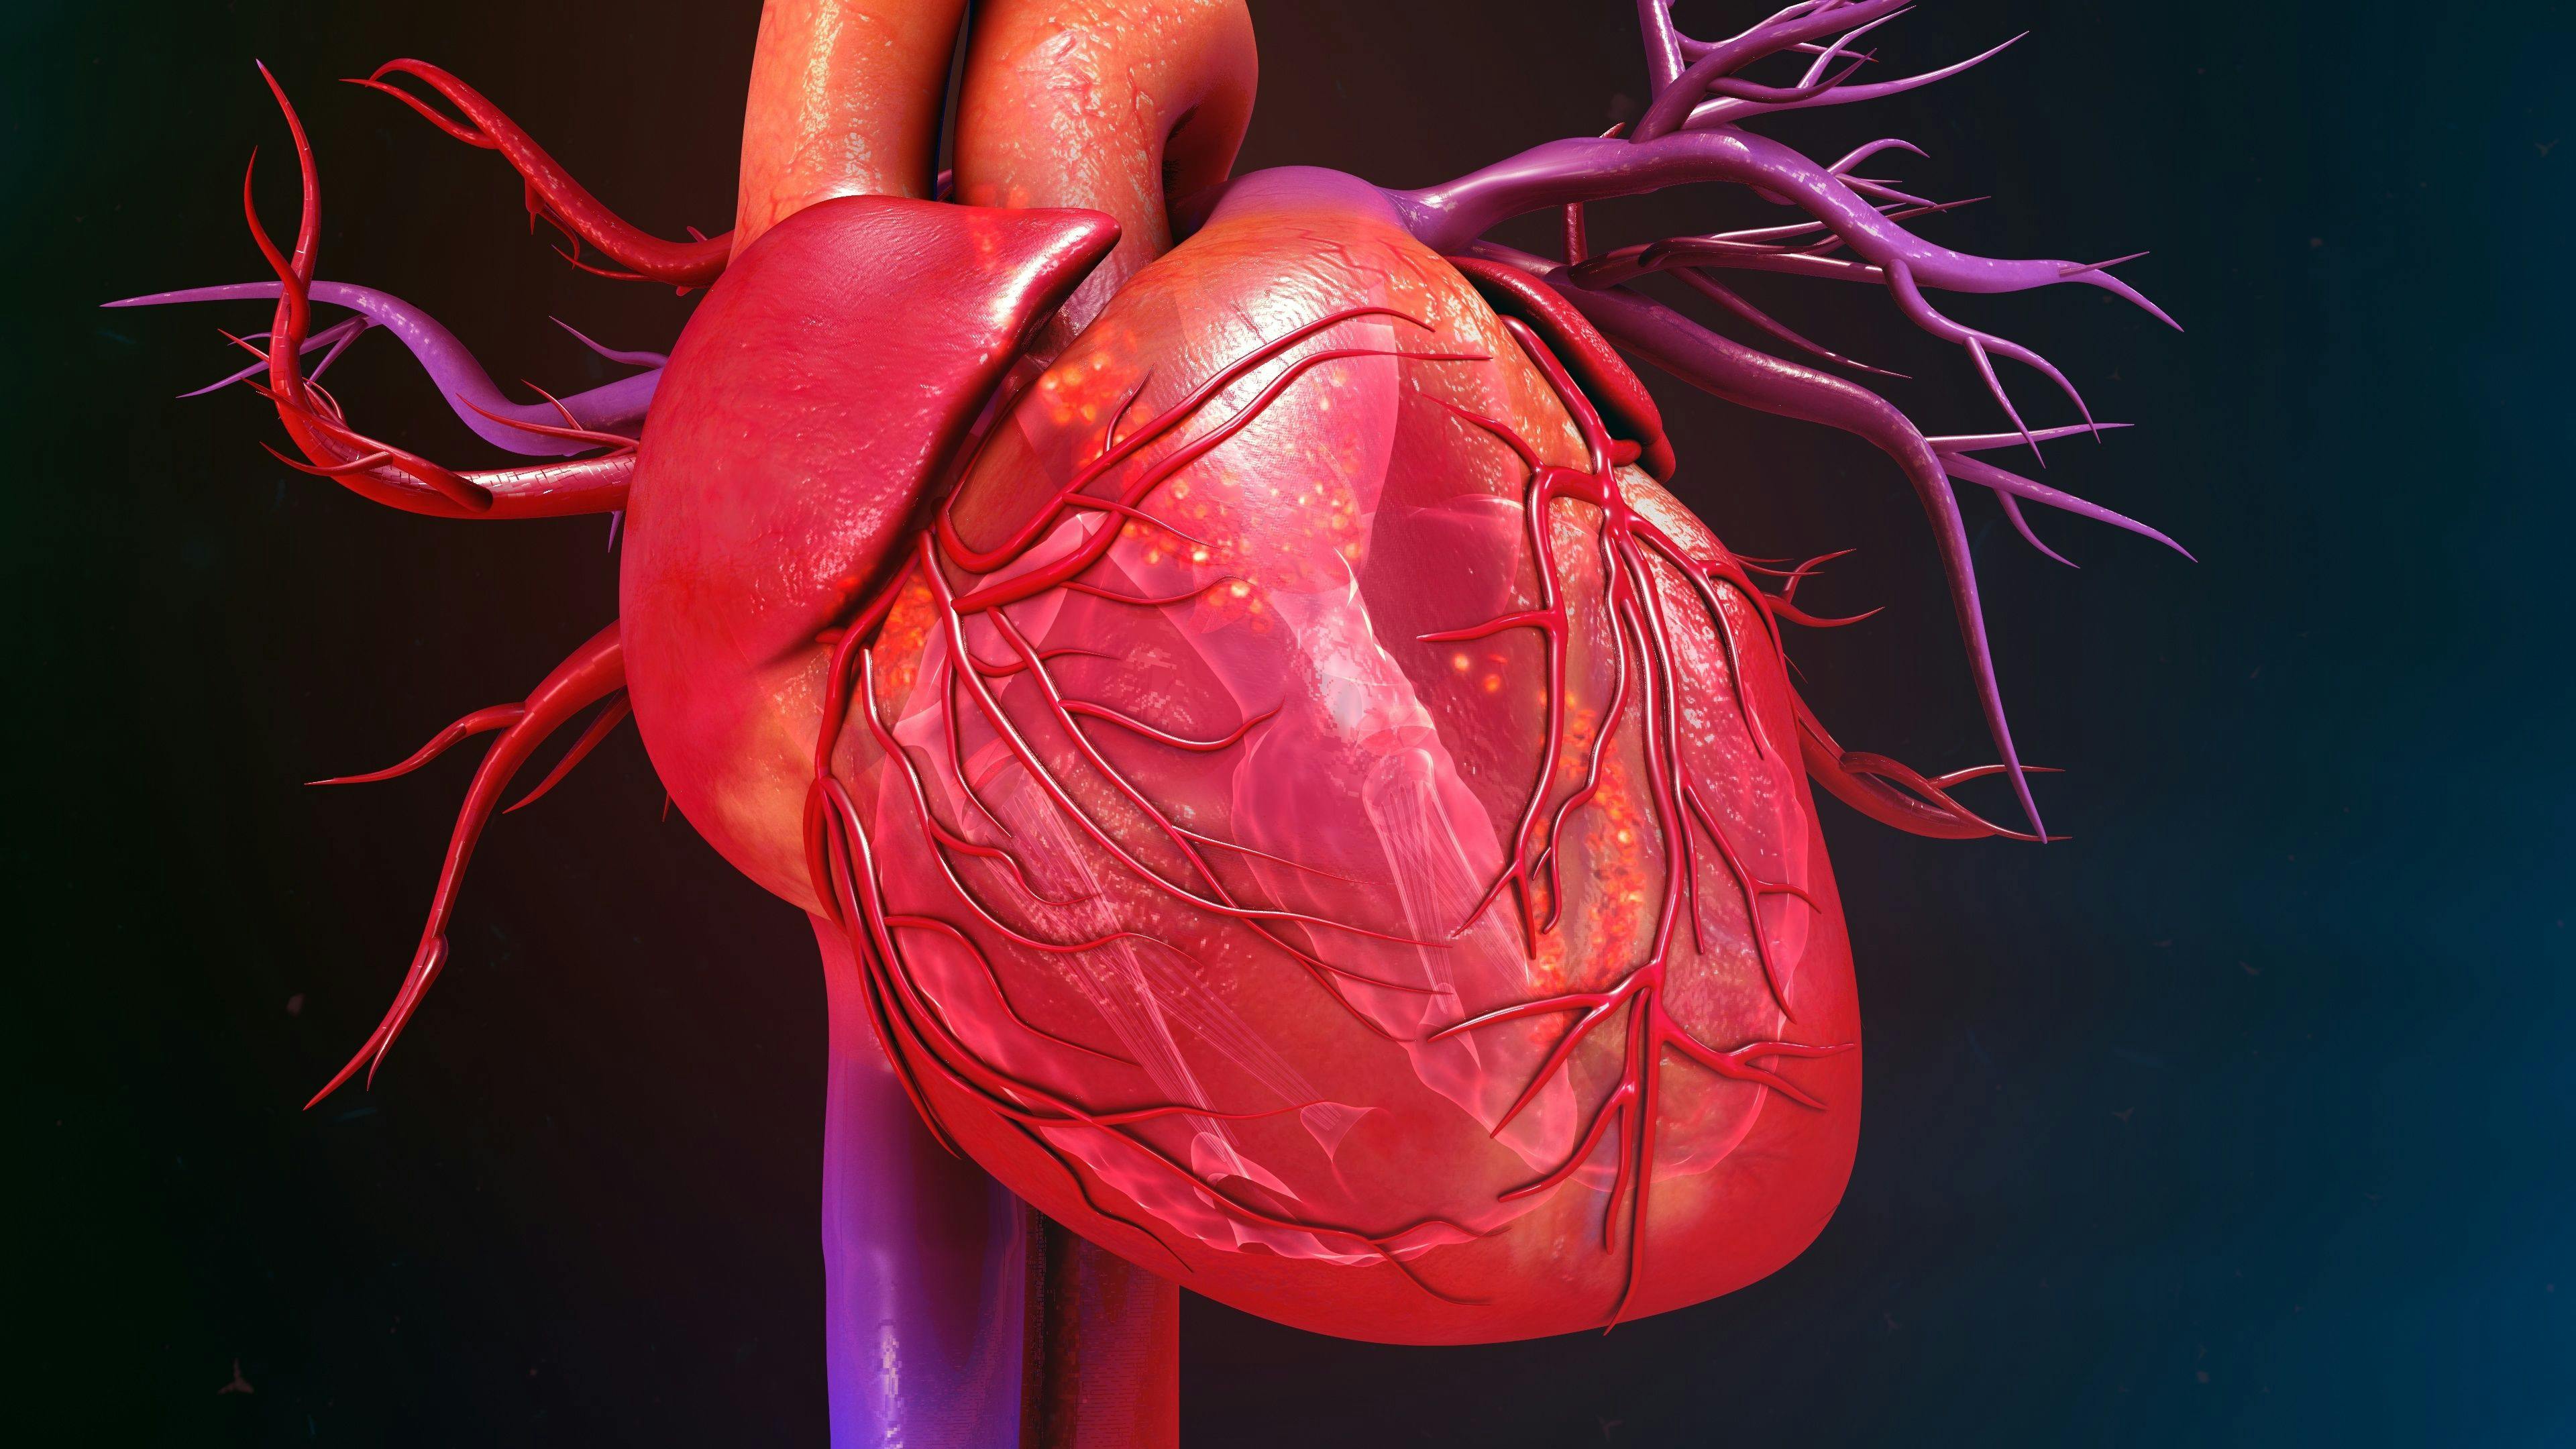 Digital illustration of a heart